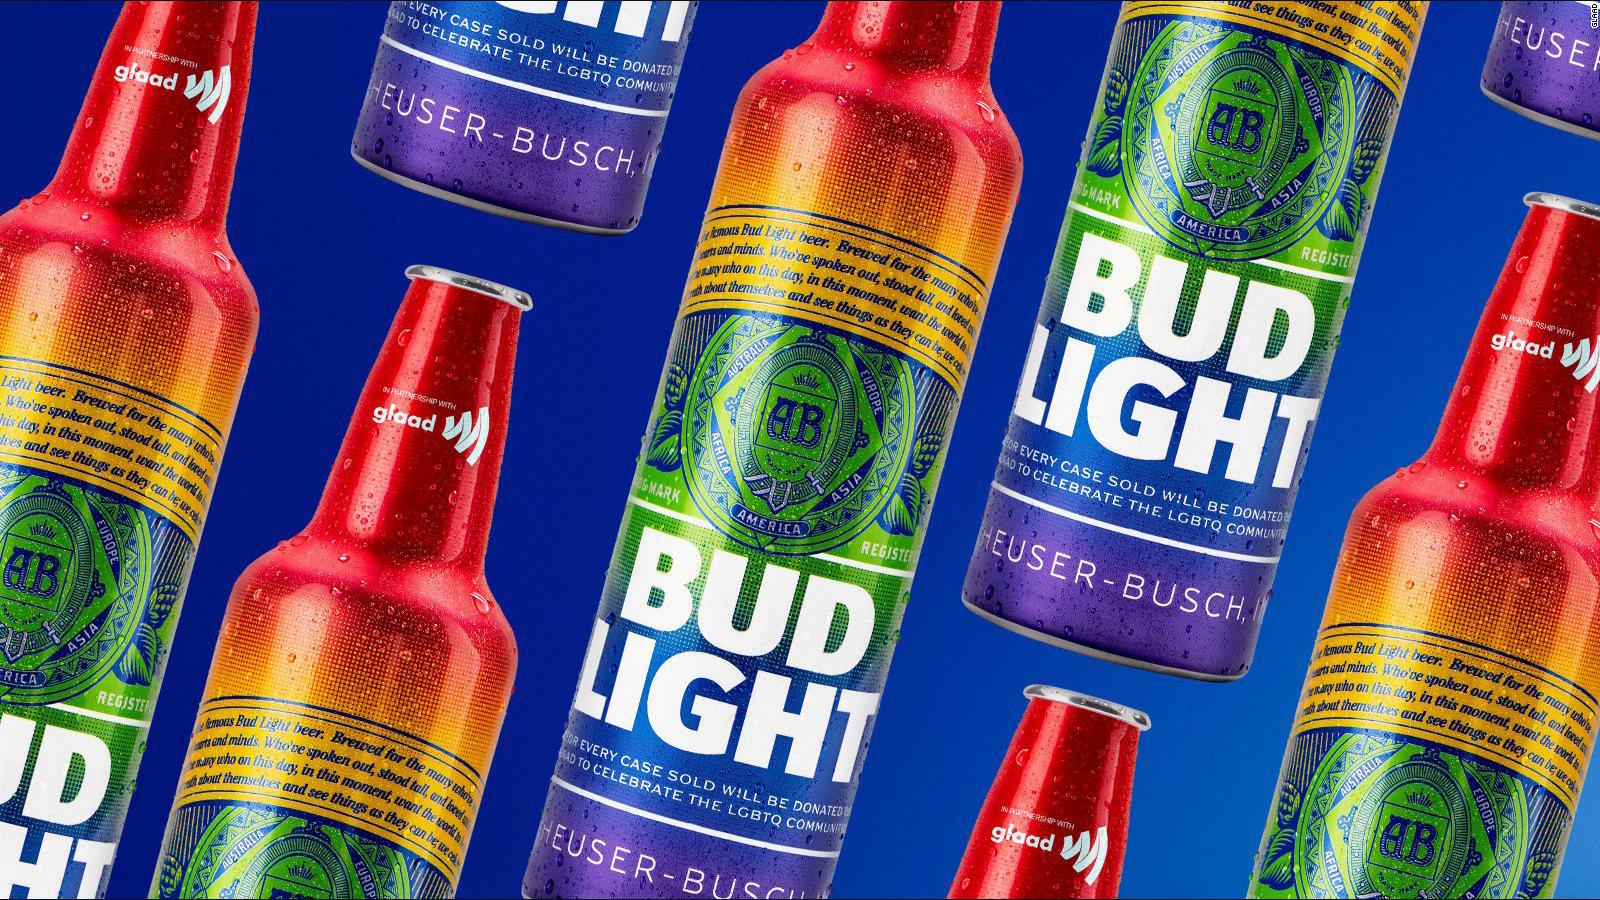 bud-light-is-selling-beer-in-rainbow-bottles-in-june-to-celebrate-pride-month-cnn